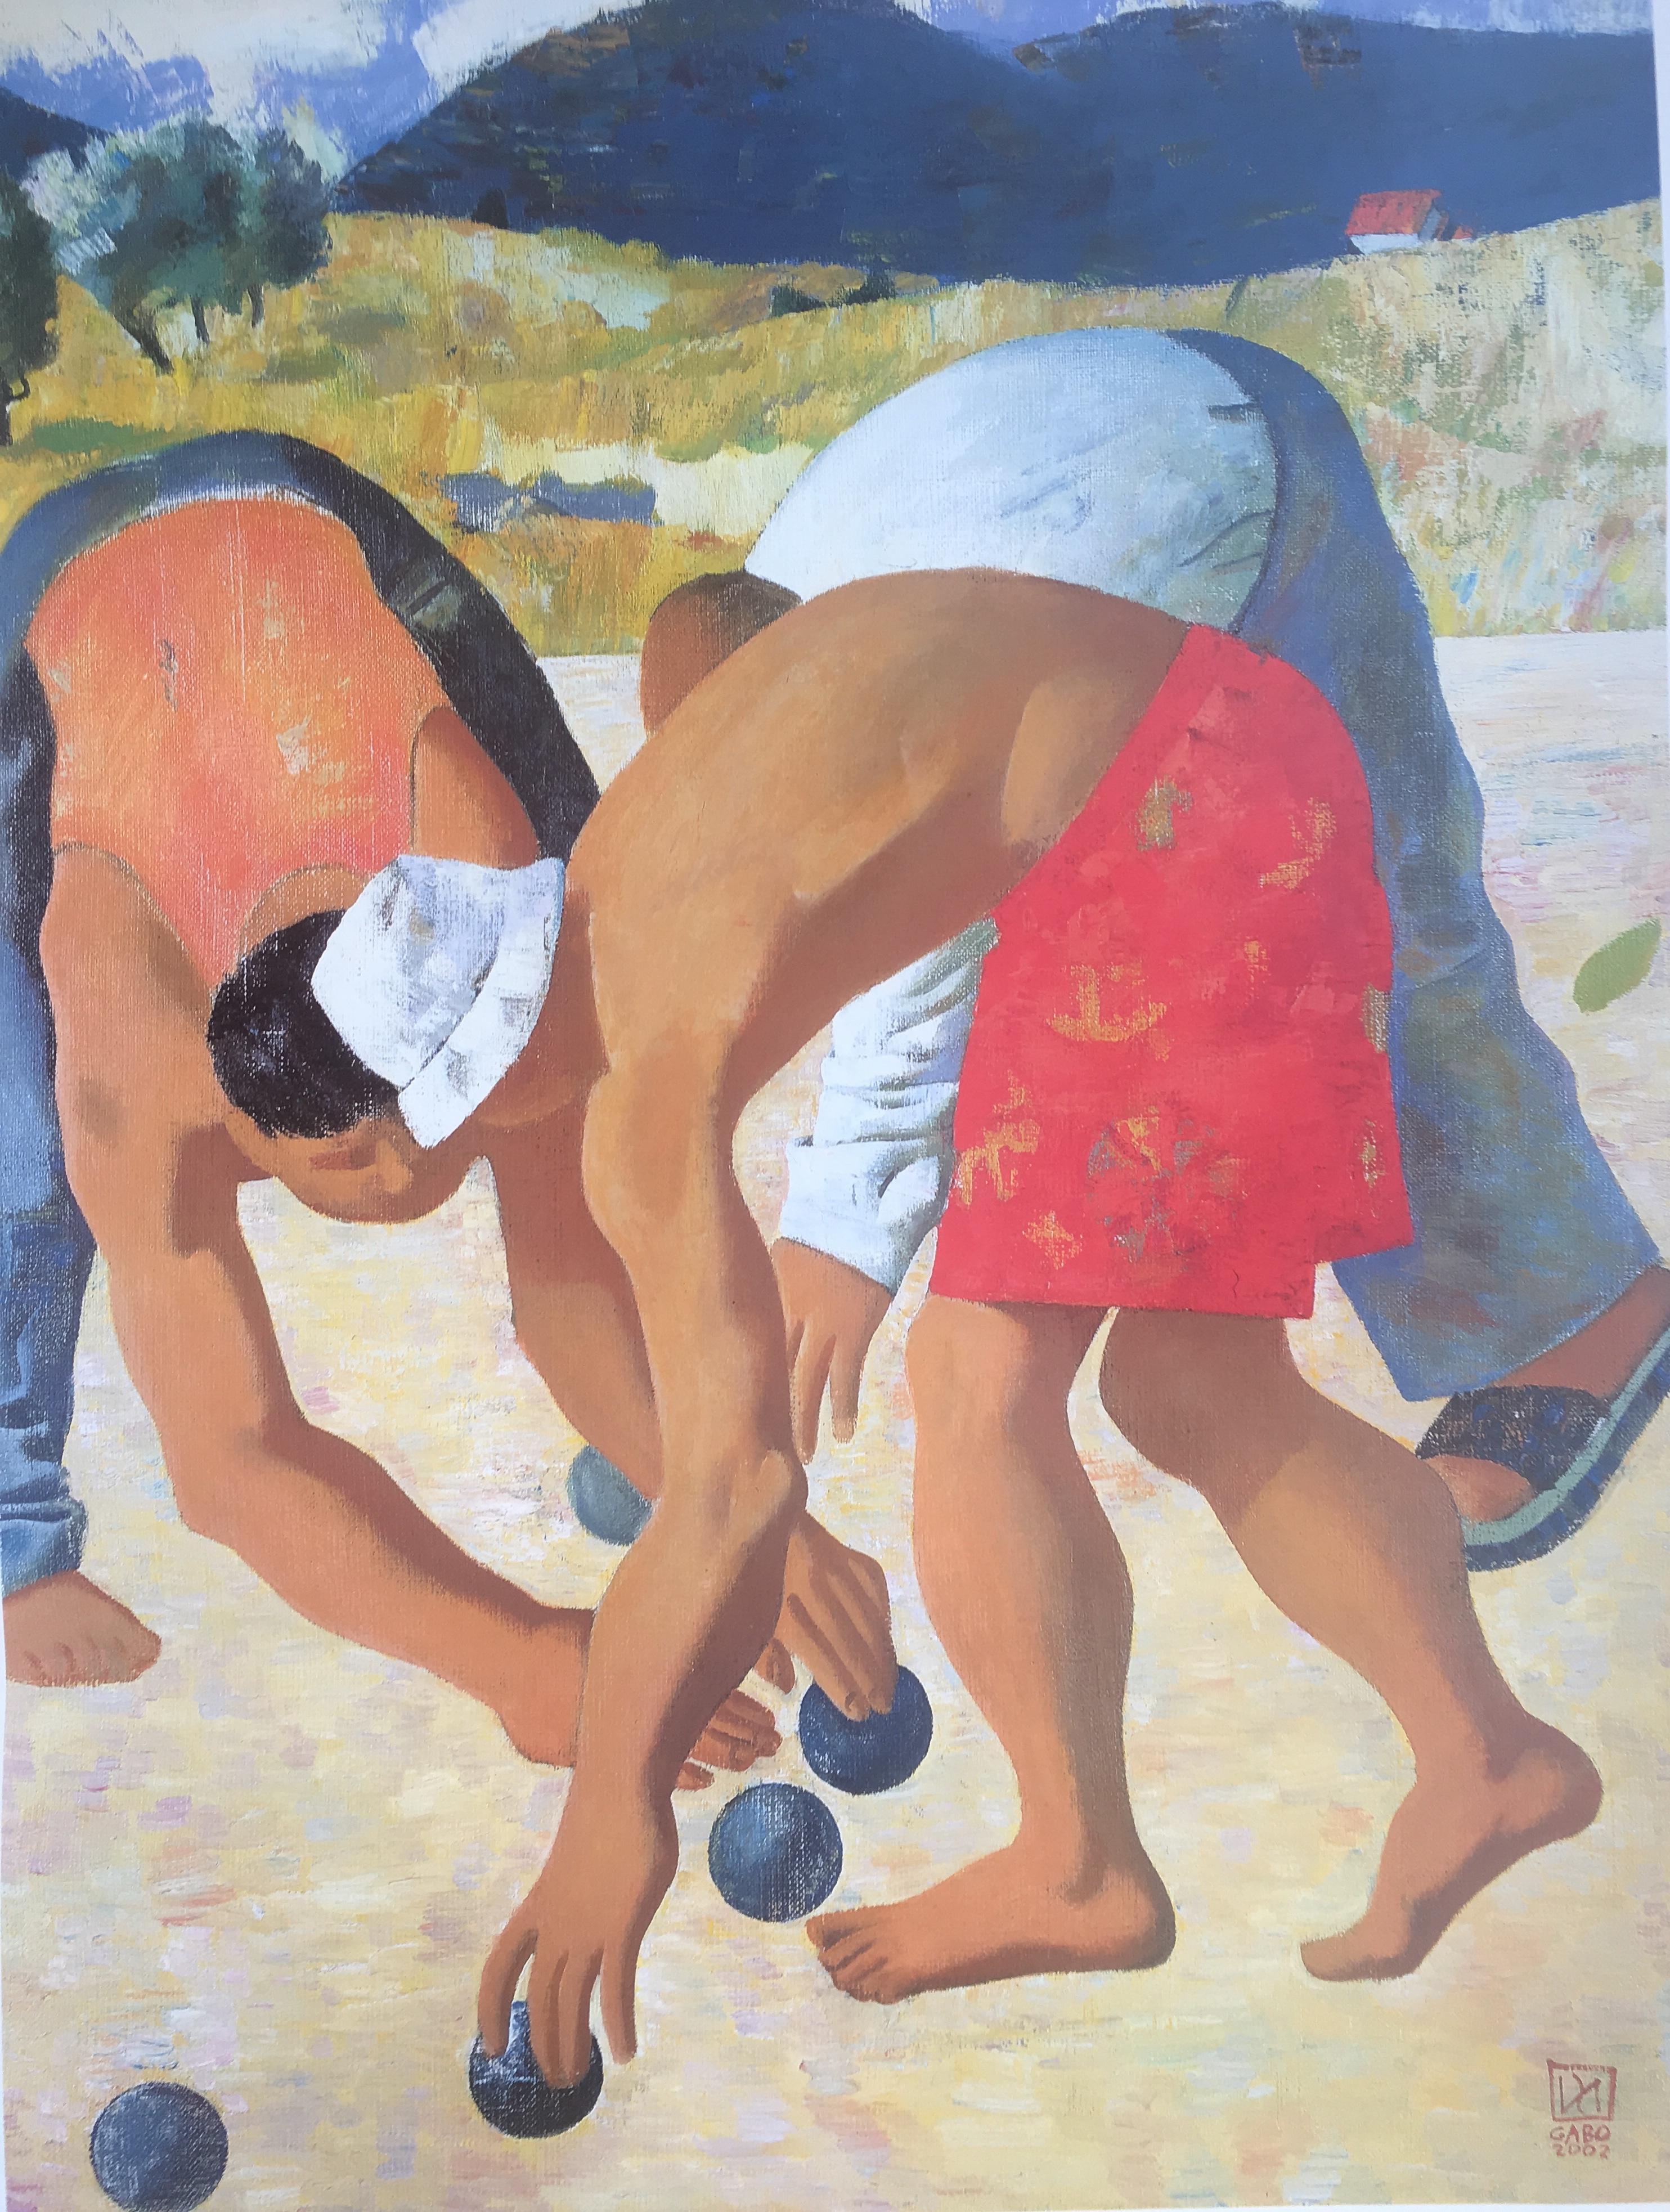 Original-Kunstplakat mit der Darstellung von Männern, die in der Provence Petanque oder Boulle spielen. Gabo ist ein mexikanischer Künstler, der in der Provence lebt. 

Dieses Plakat hat sehr lebendige Farben und ein fröhliches Thema.